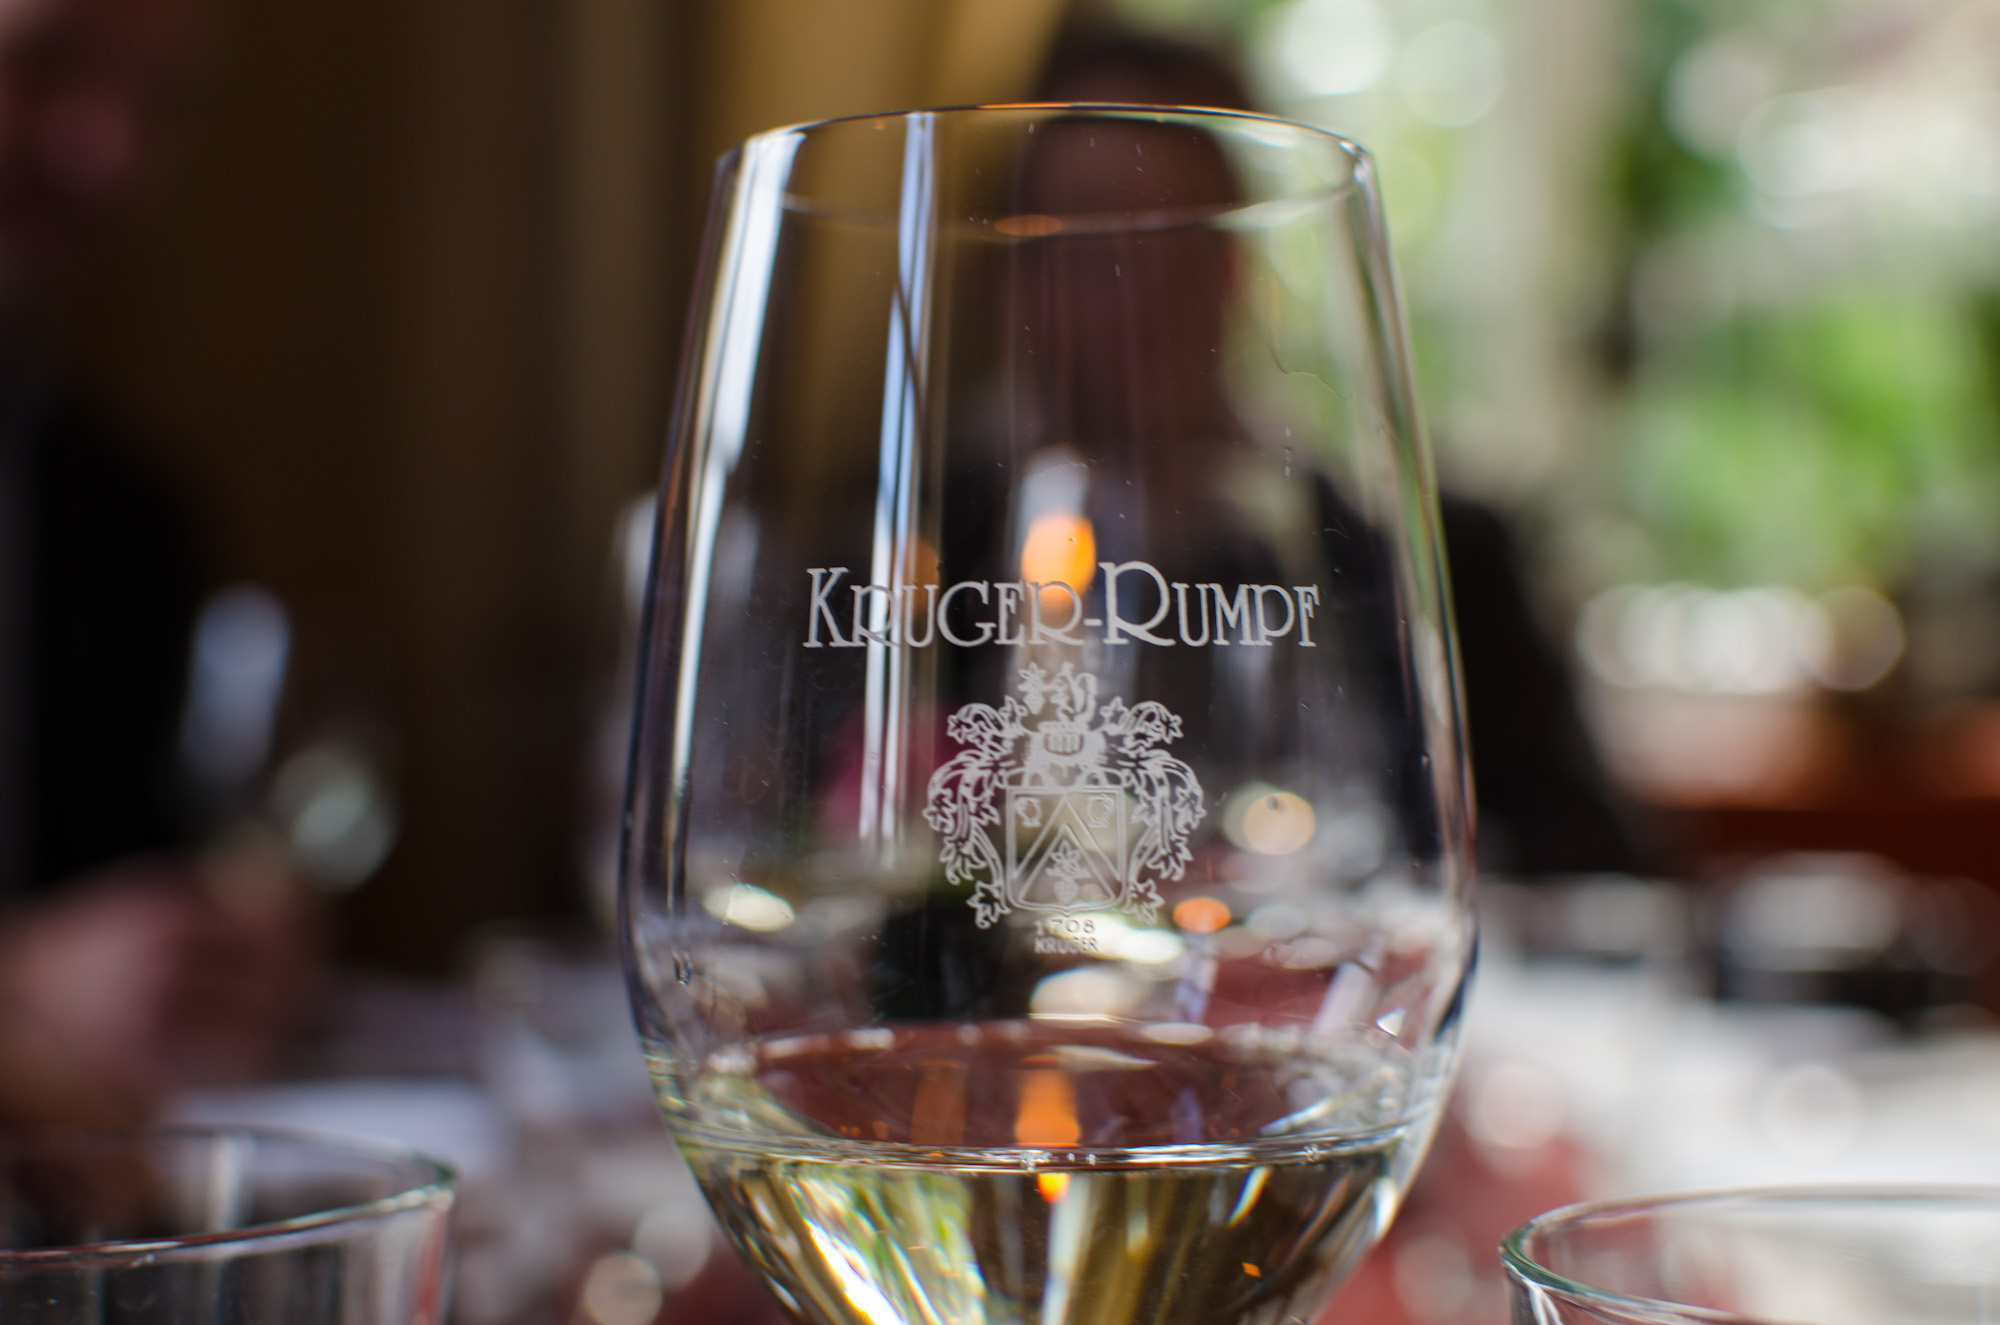 glass with Kruger-Rumpf emblem